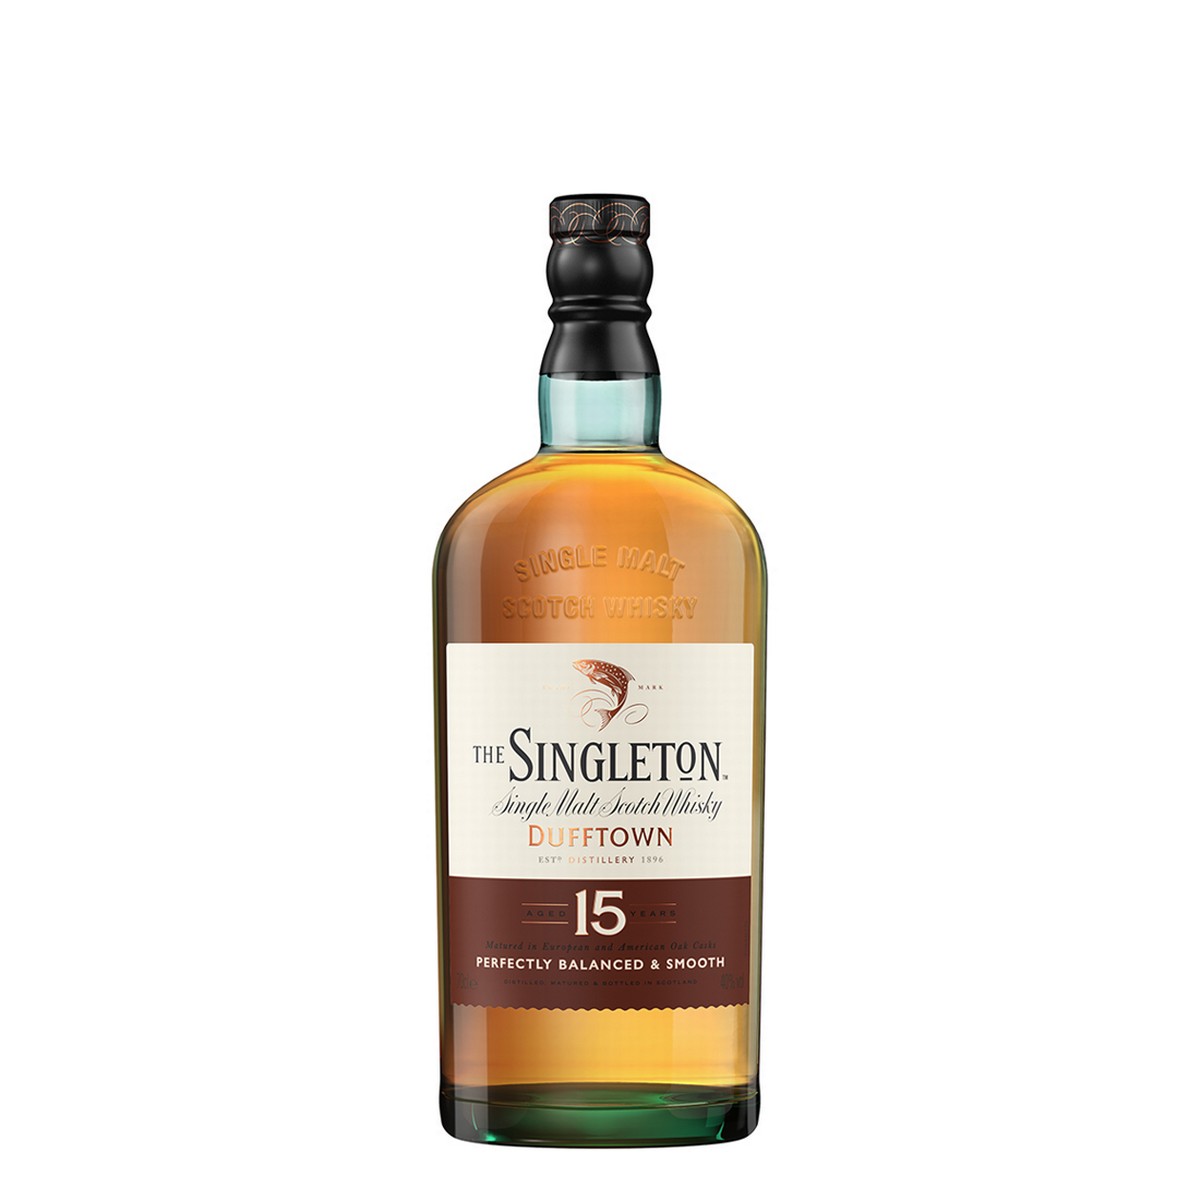 The Singleton Of Dufftown 15 Y.O.